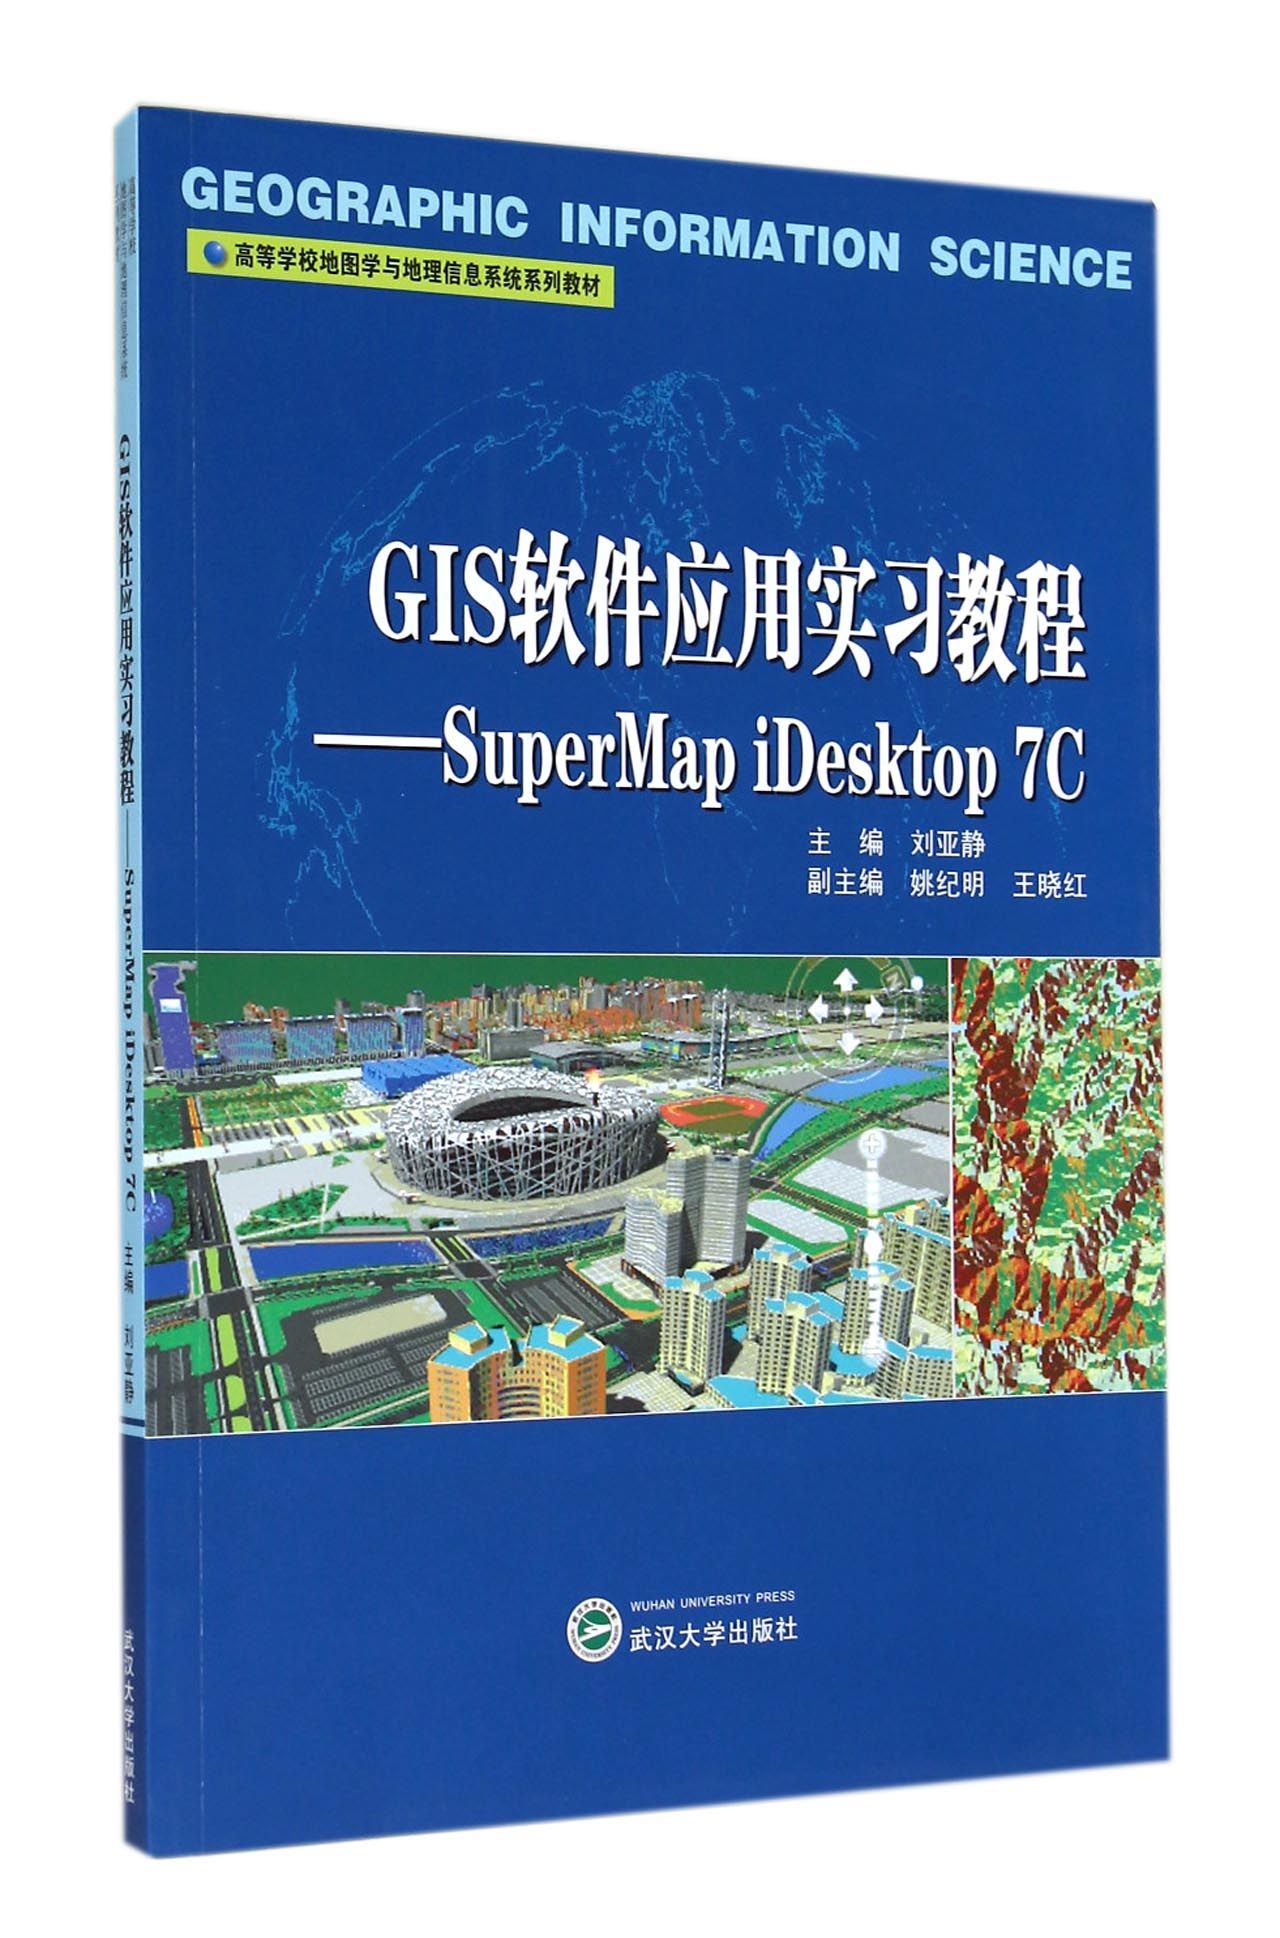 【正版书籍】GIS软件应用实习教程--SuperMap iDesktop7C(高等学校地图学与地理信息系统系列教材)